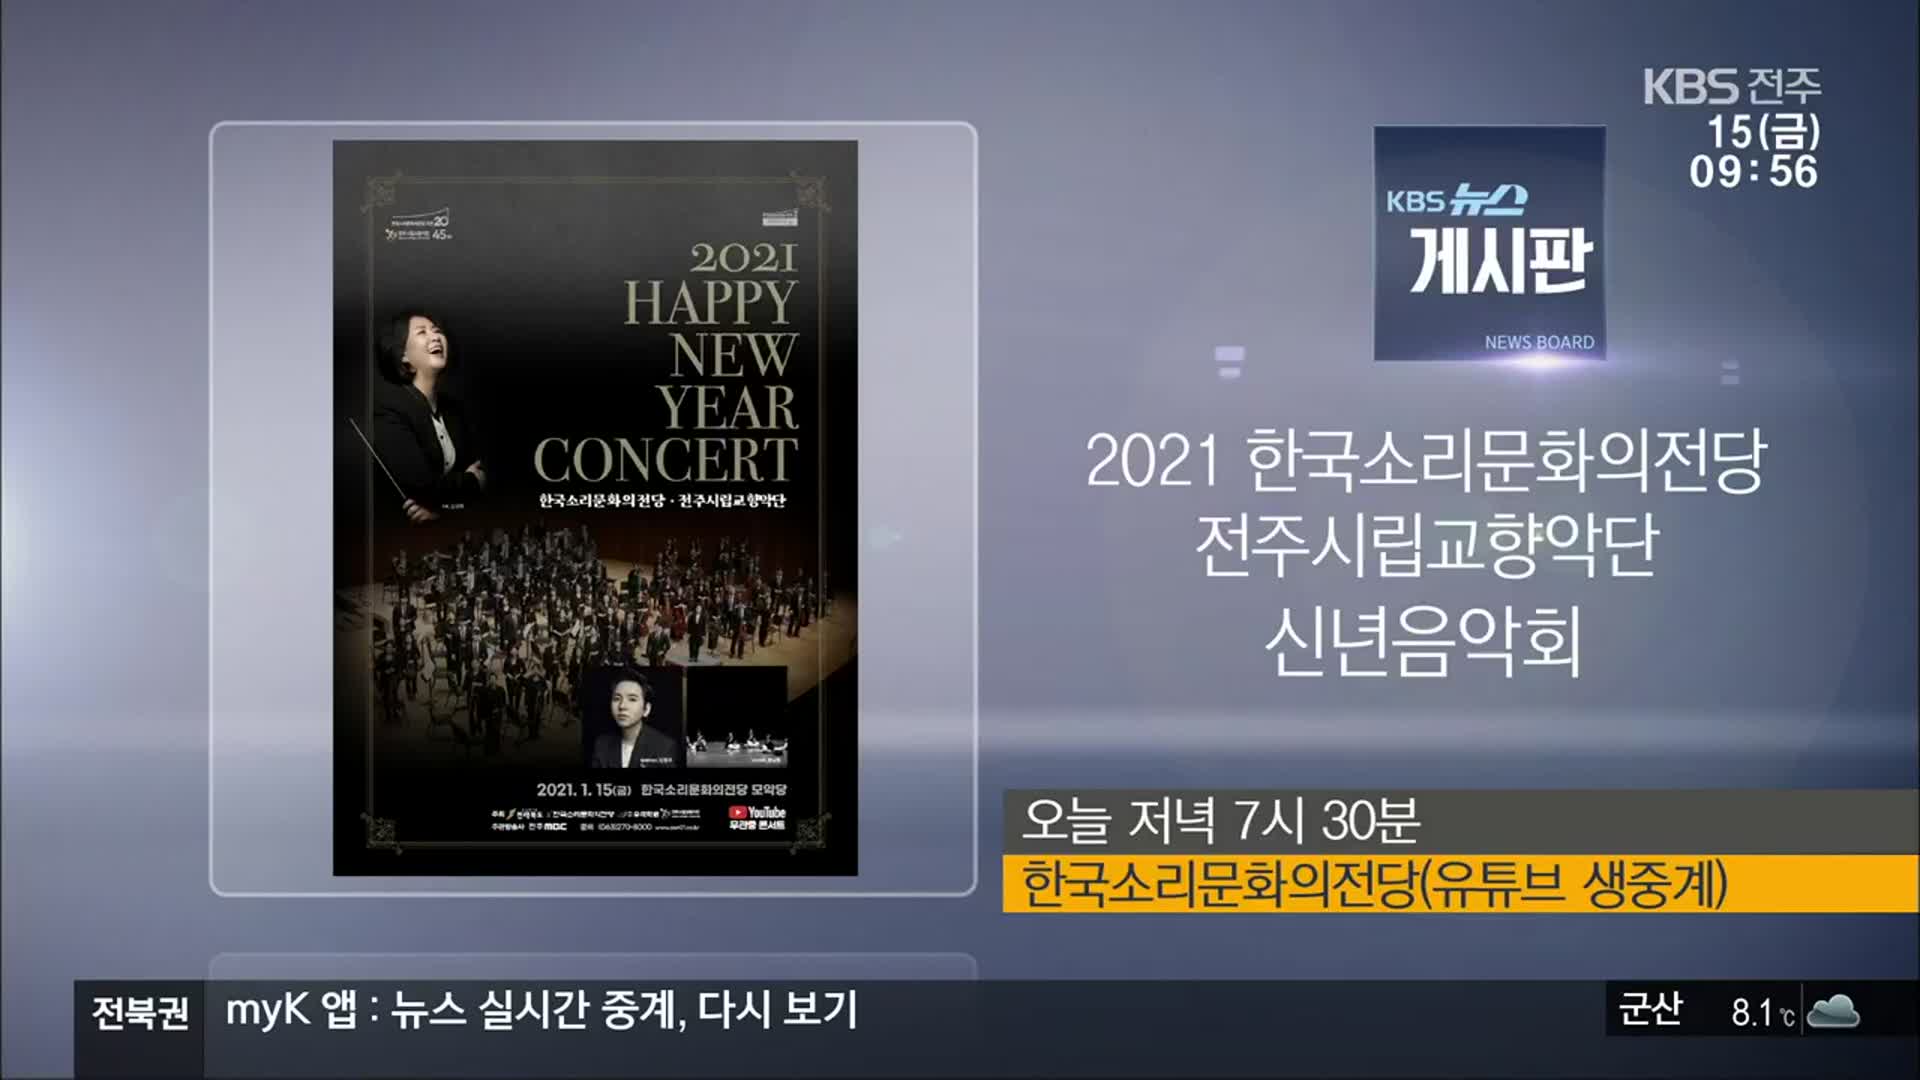 [게시판] 2021 한국소리문화의전당 전주시립교향악단 신년음악회 외